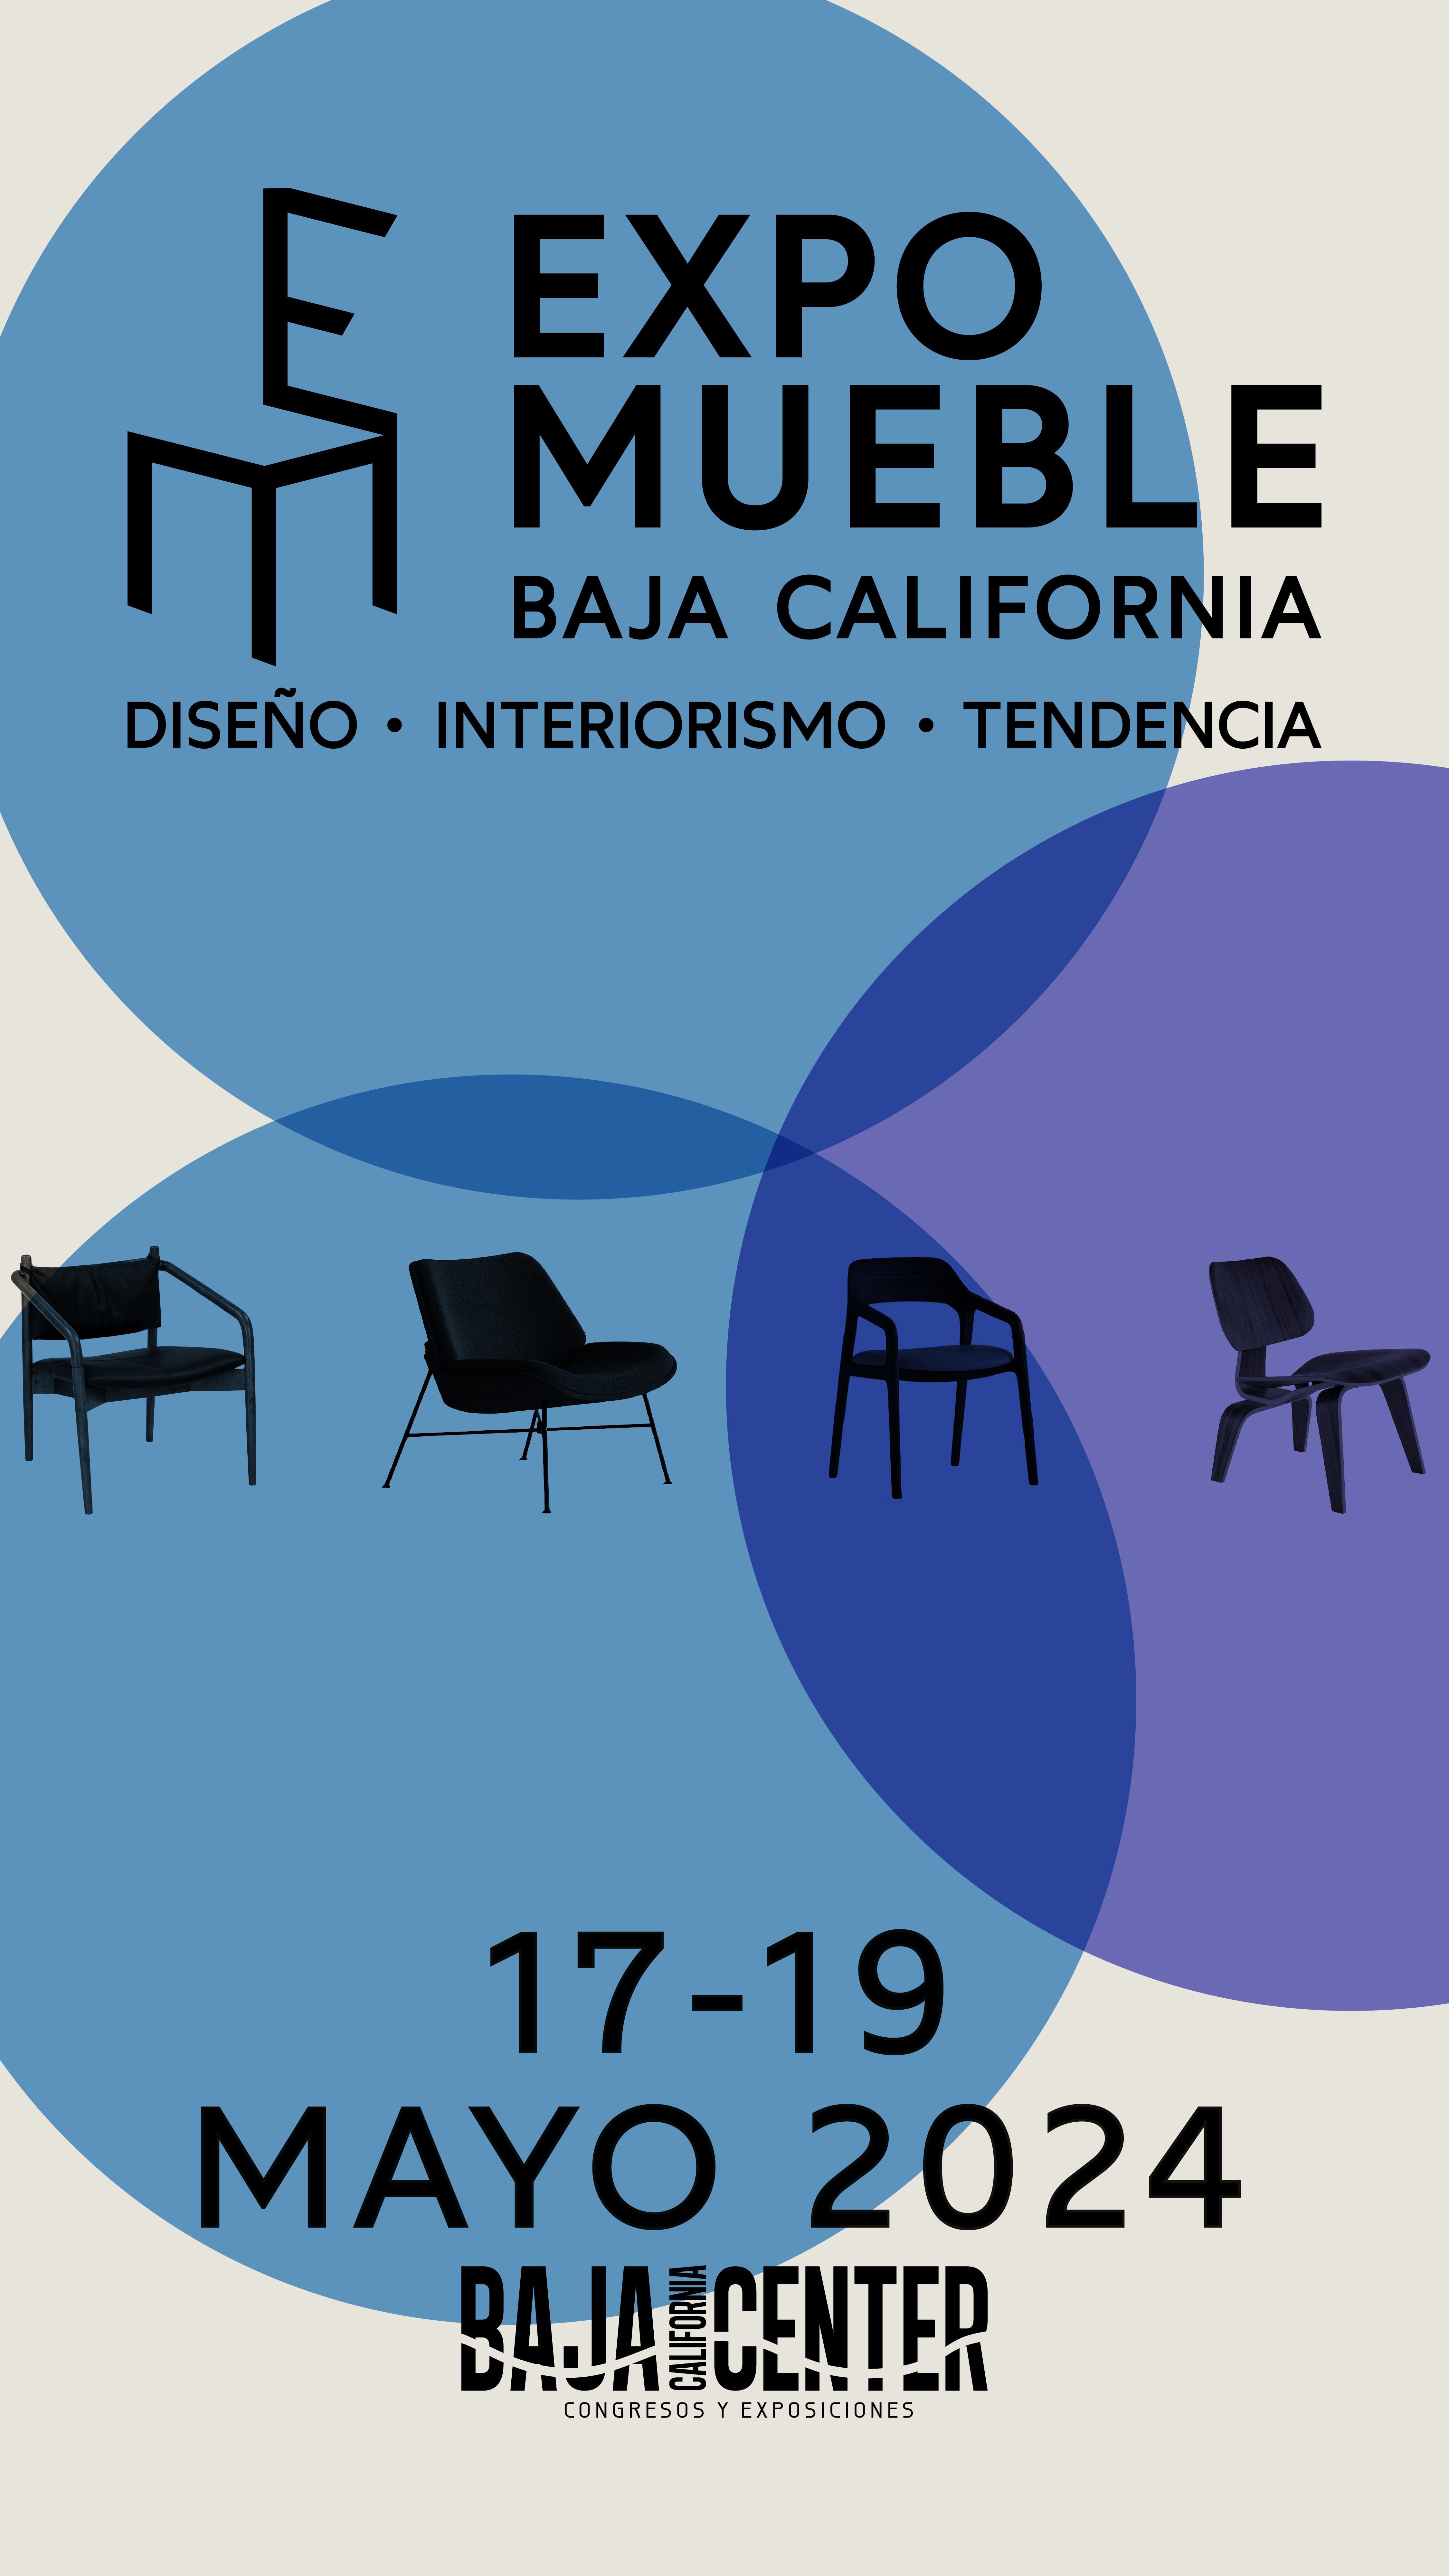 Expo Mueble Baja California se realizará del 17 al 19 de mayo.